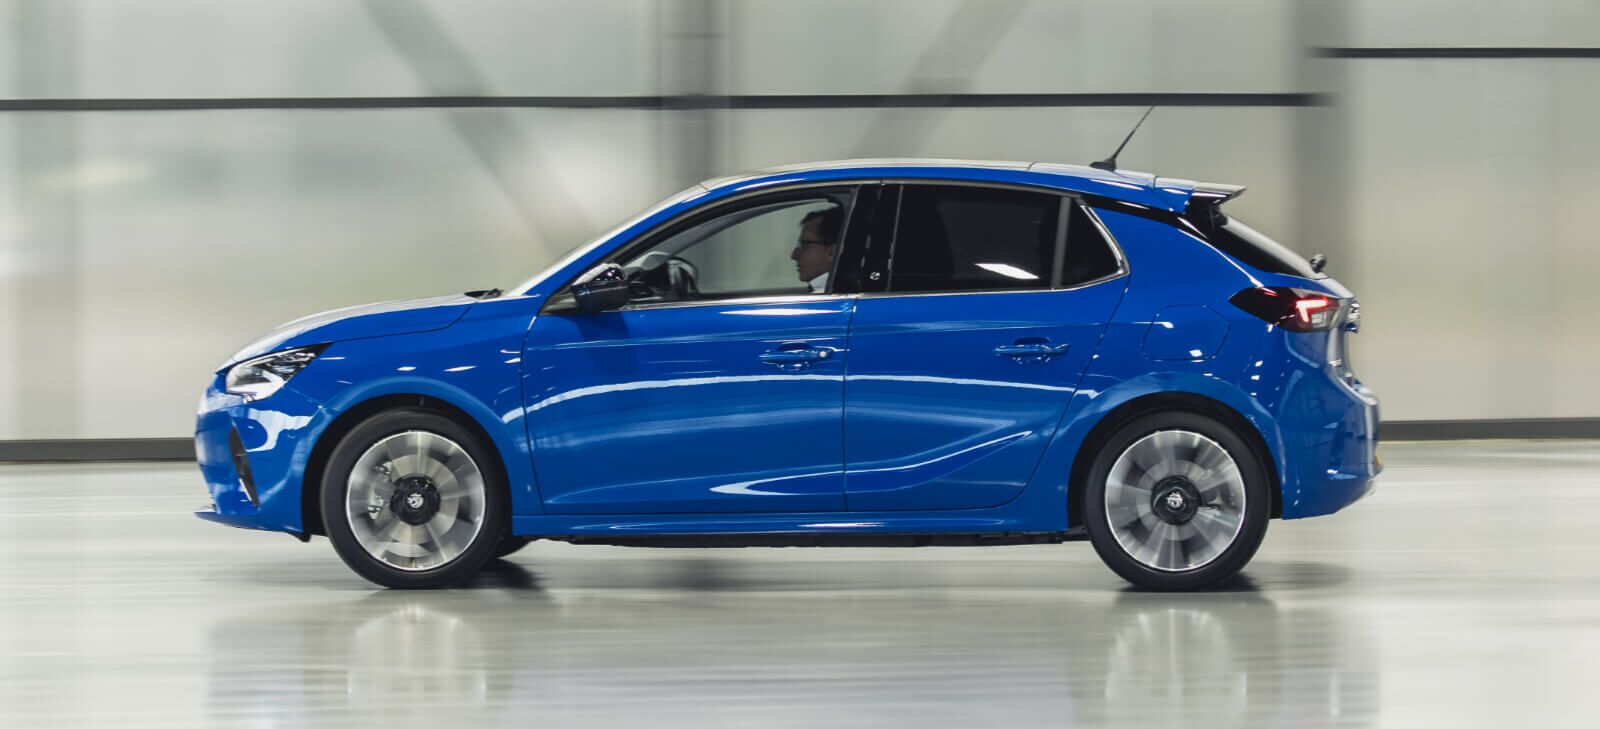 Vauxhall Corsa Electric Review 2023 Price Range Uk Specs